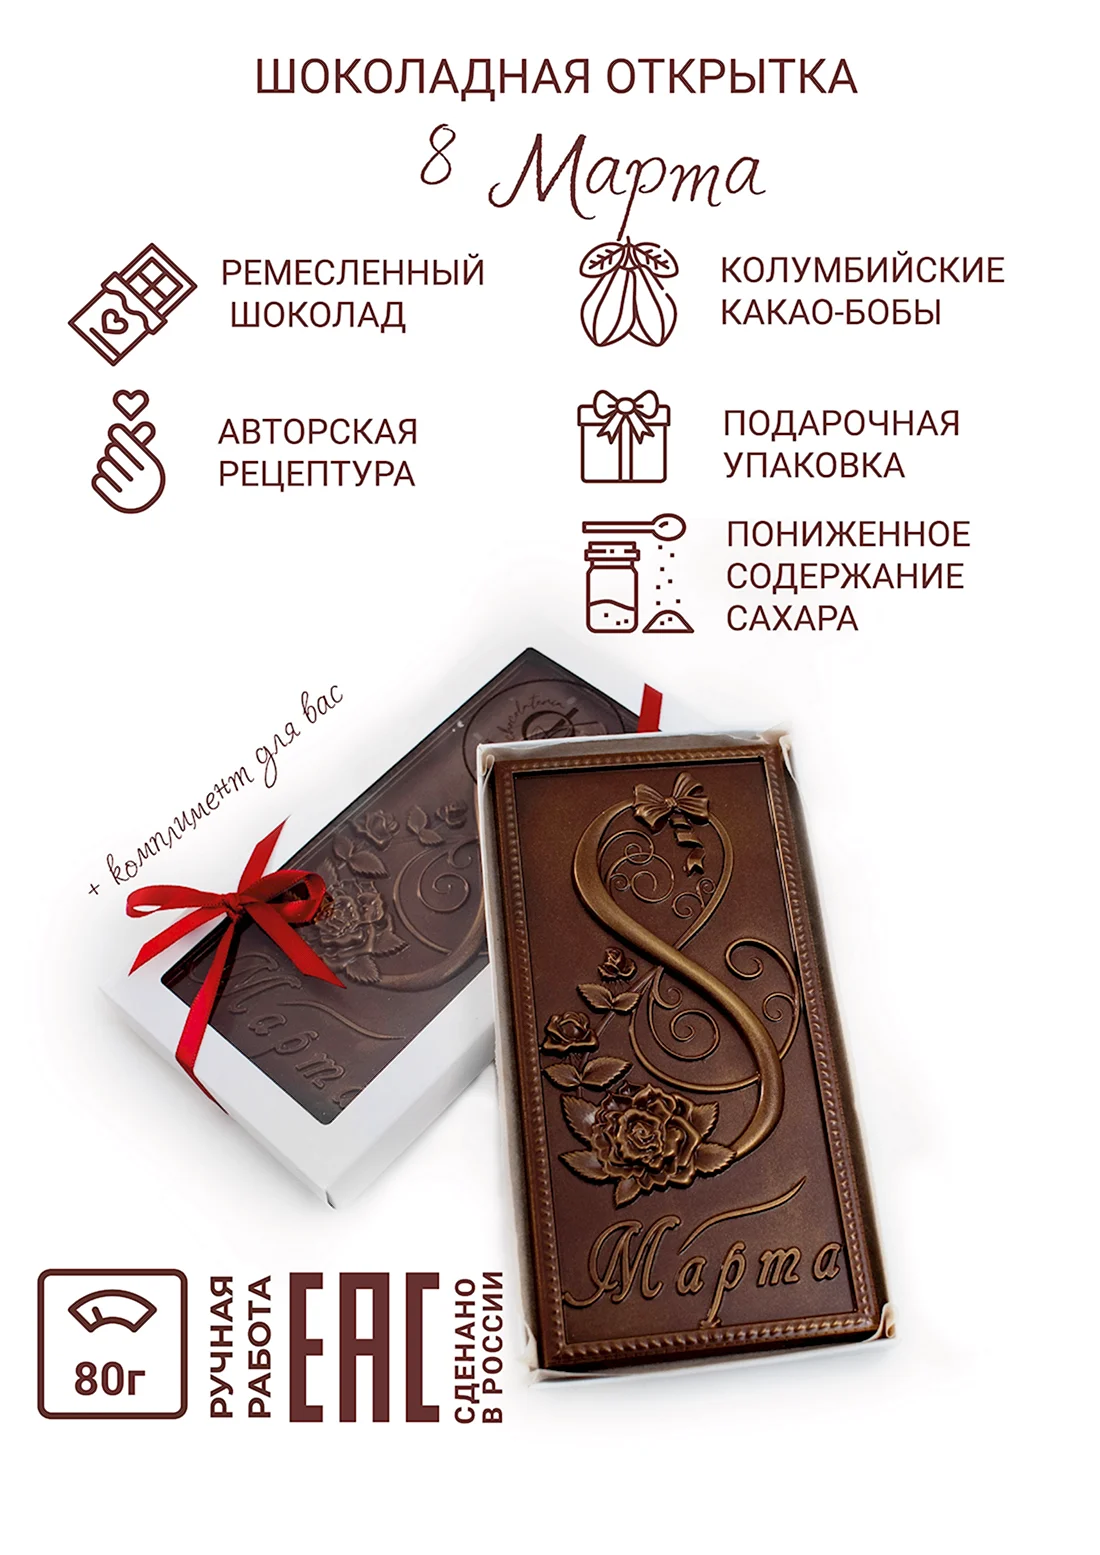 Шоколадная открытка